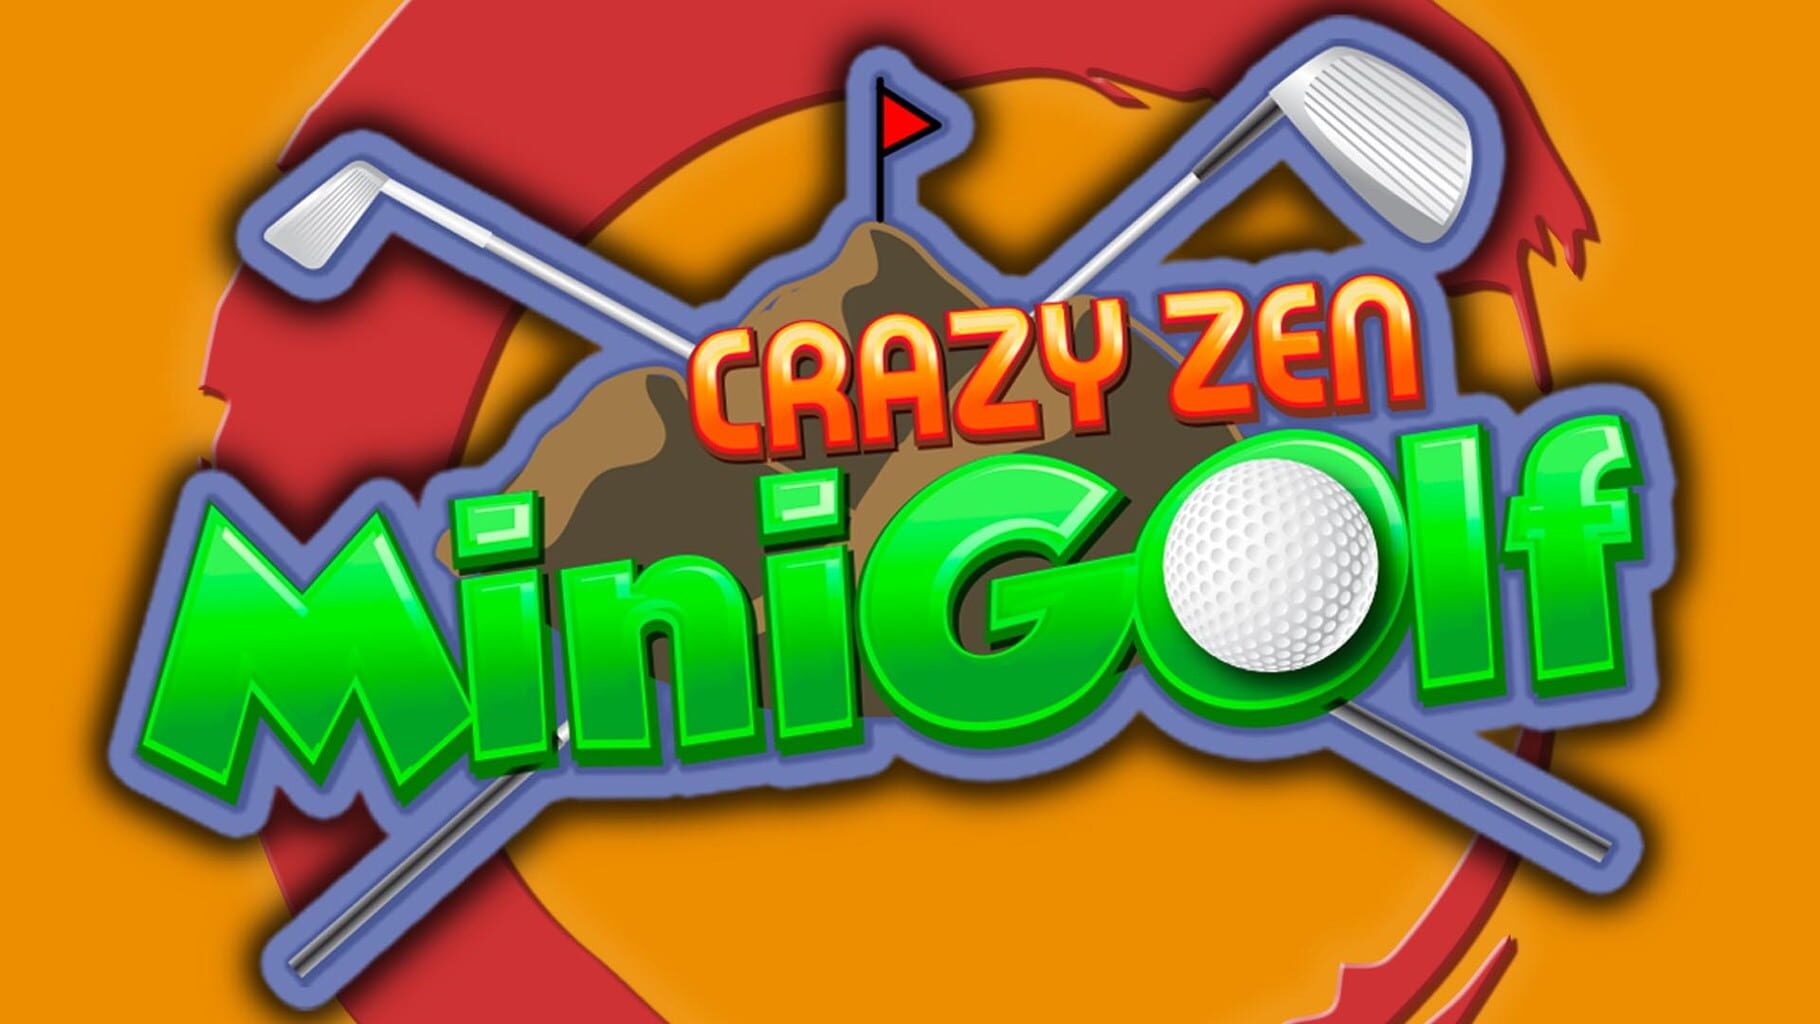 Crazy Zen Mini Golf artwork